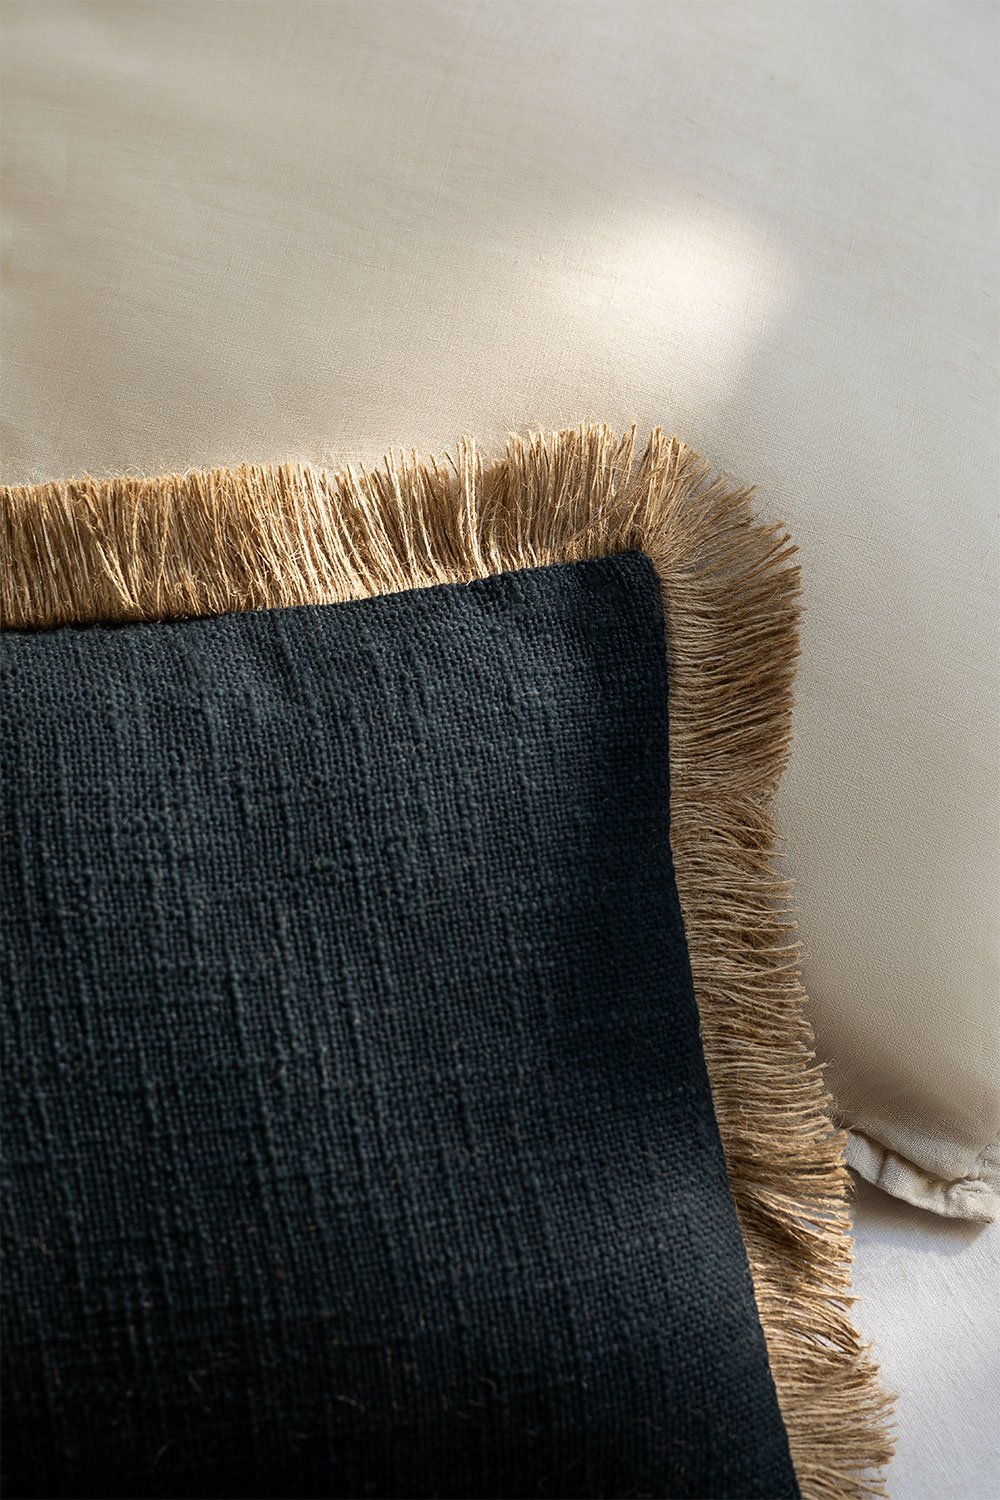 Coussin rectangulaire en coton (30x50 cm) Paraiba, image de la galerie 2